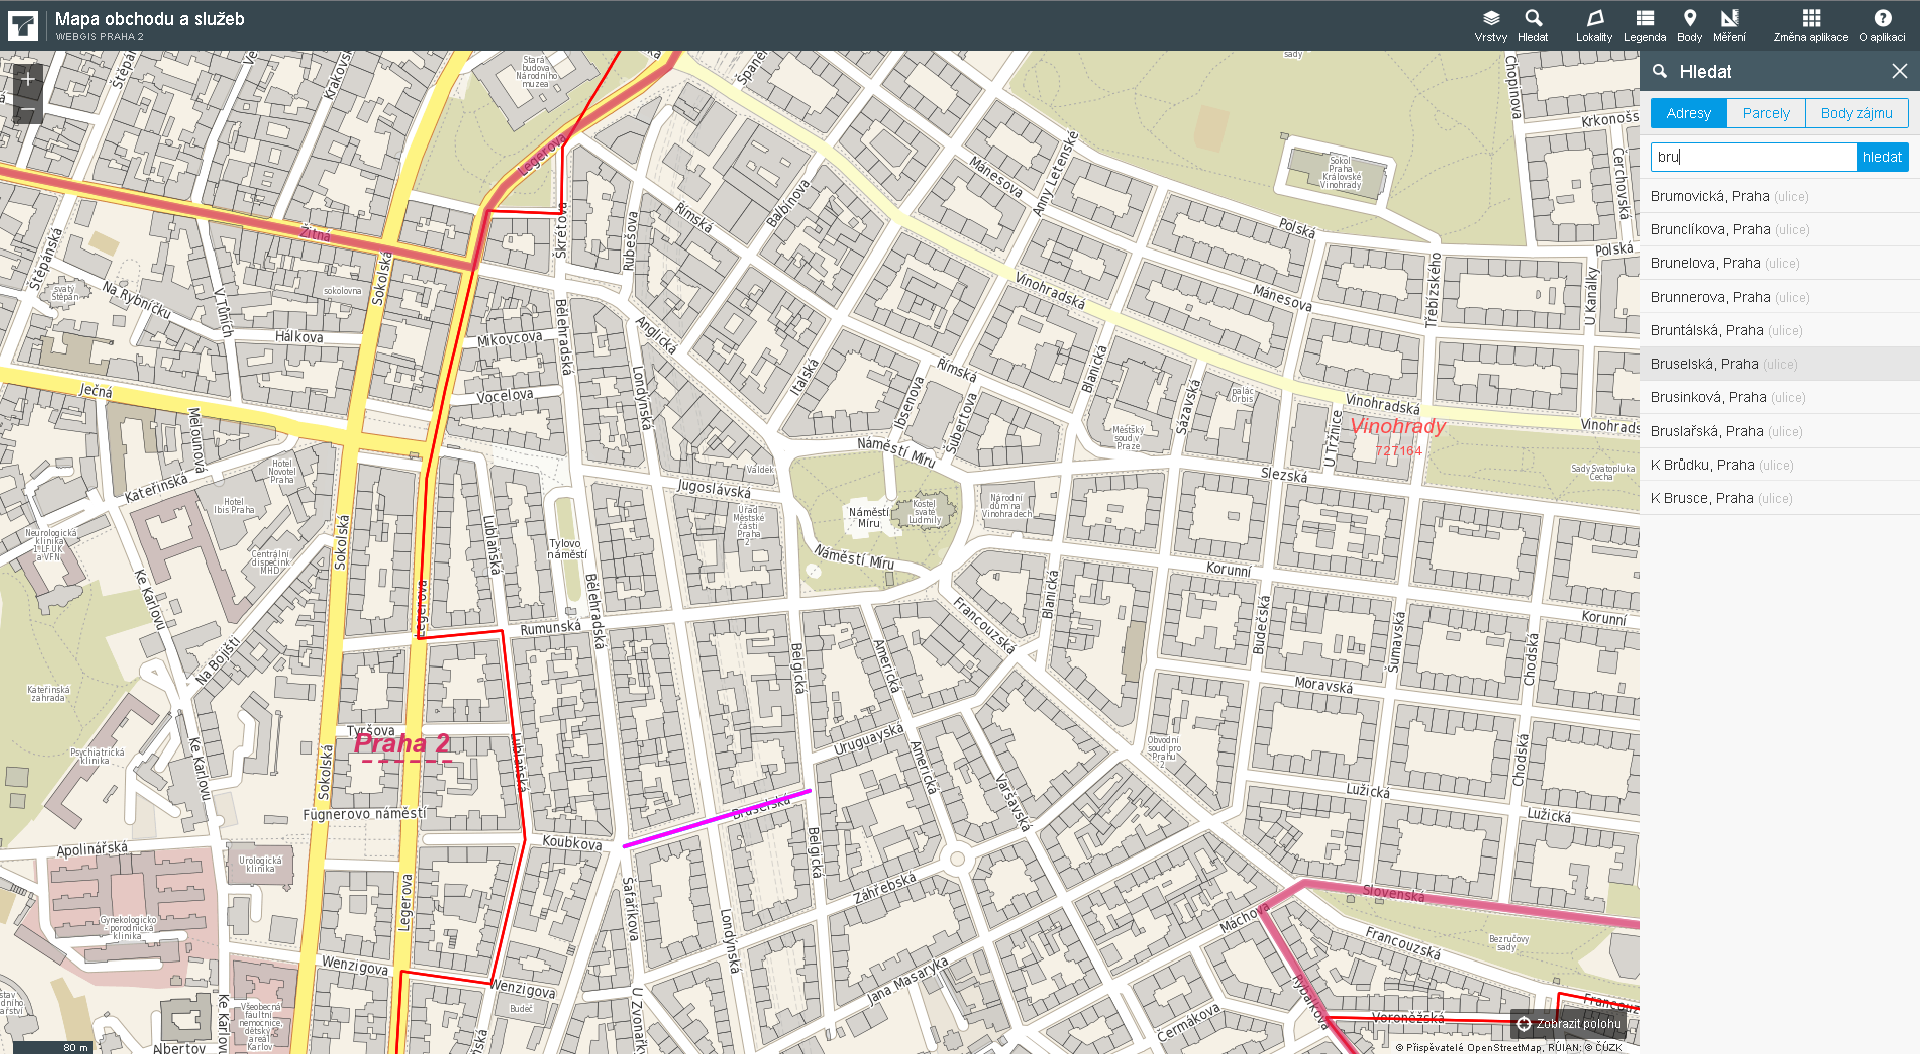 VYHLEDÁVÁNÍ vyhledávání ulic - mapa obchodu a služeb obsahuje funkcionalitu inteligentního vyhledávání adres,